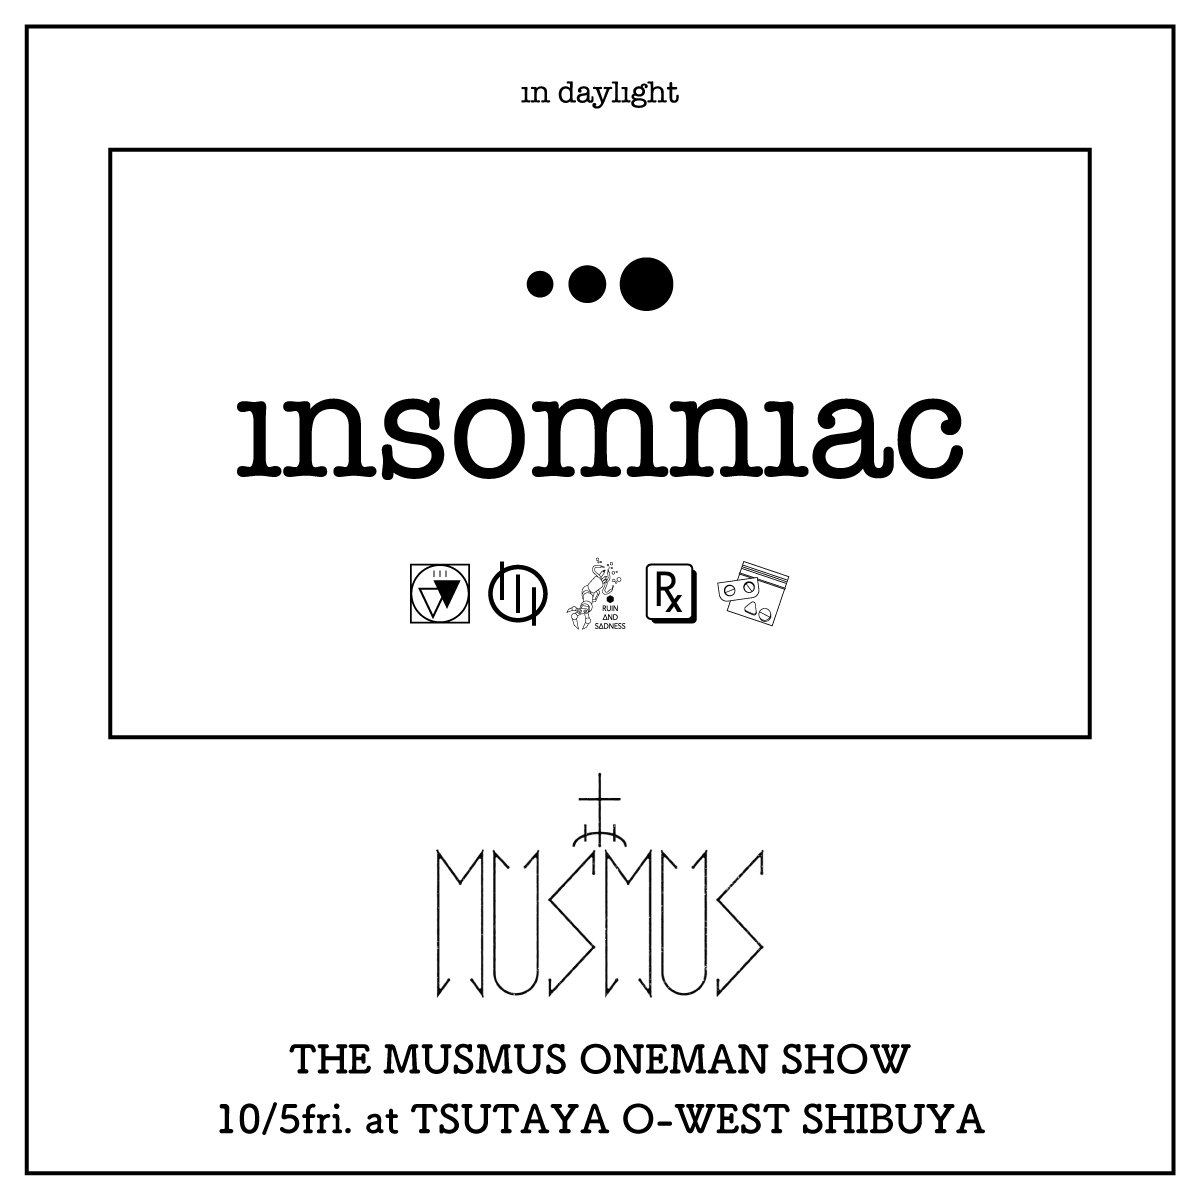 insomniac in THE MUSMUS ONEMAN SHOW